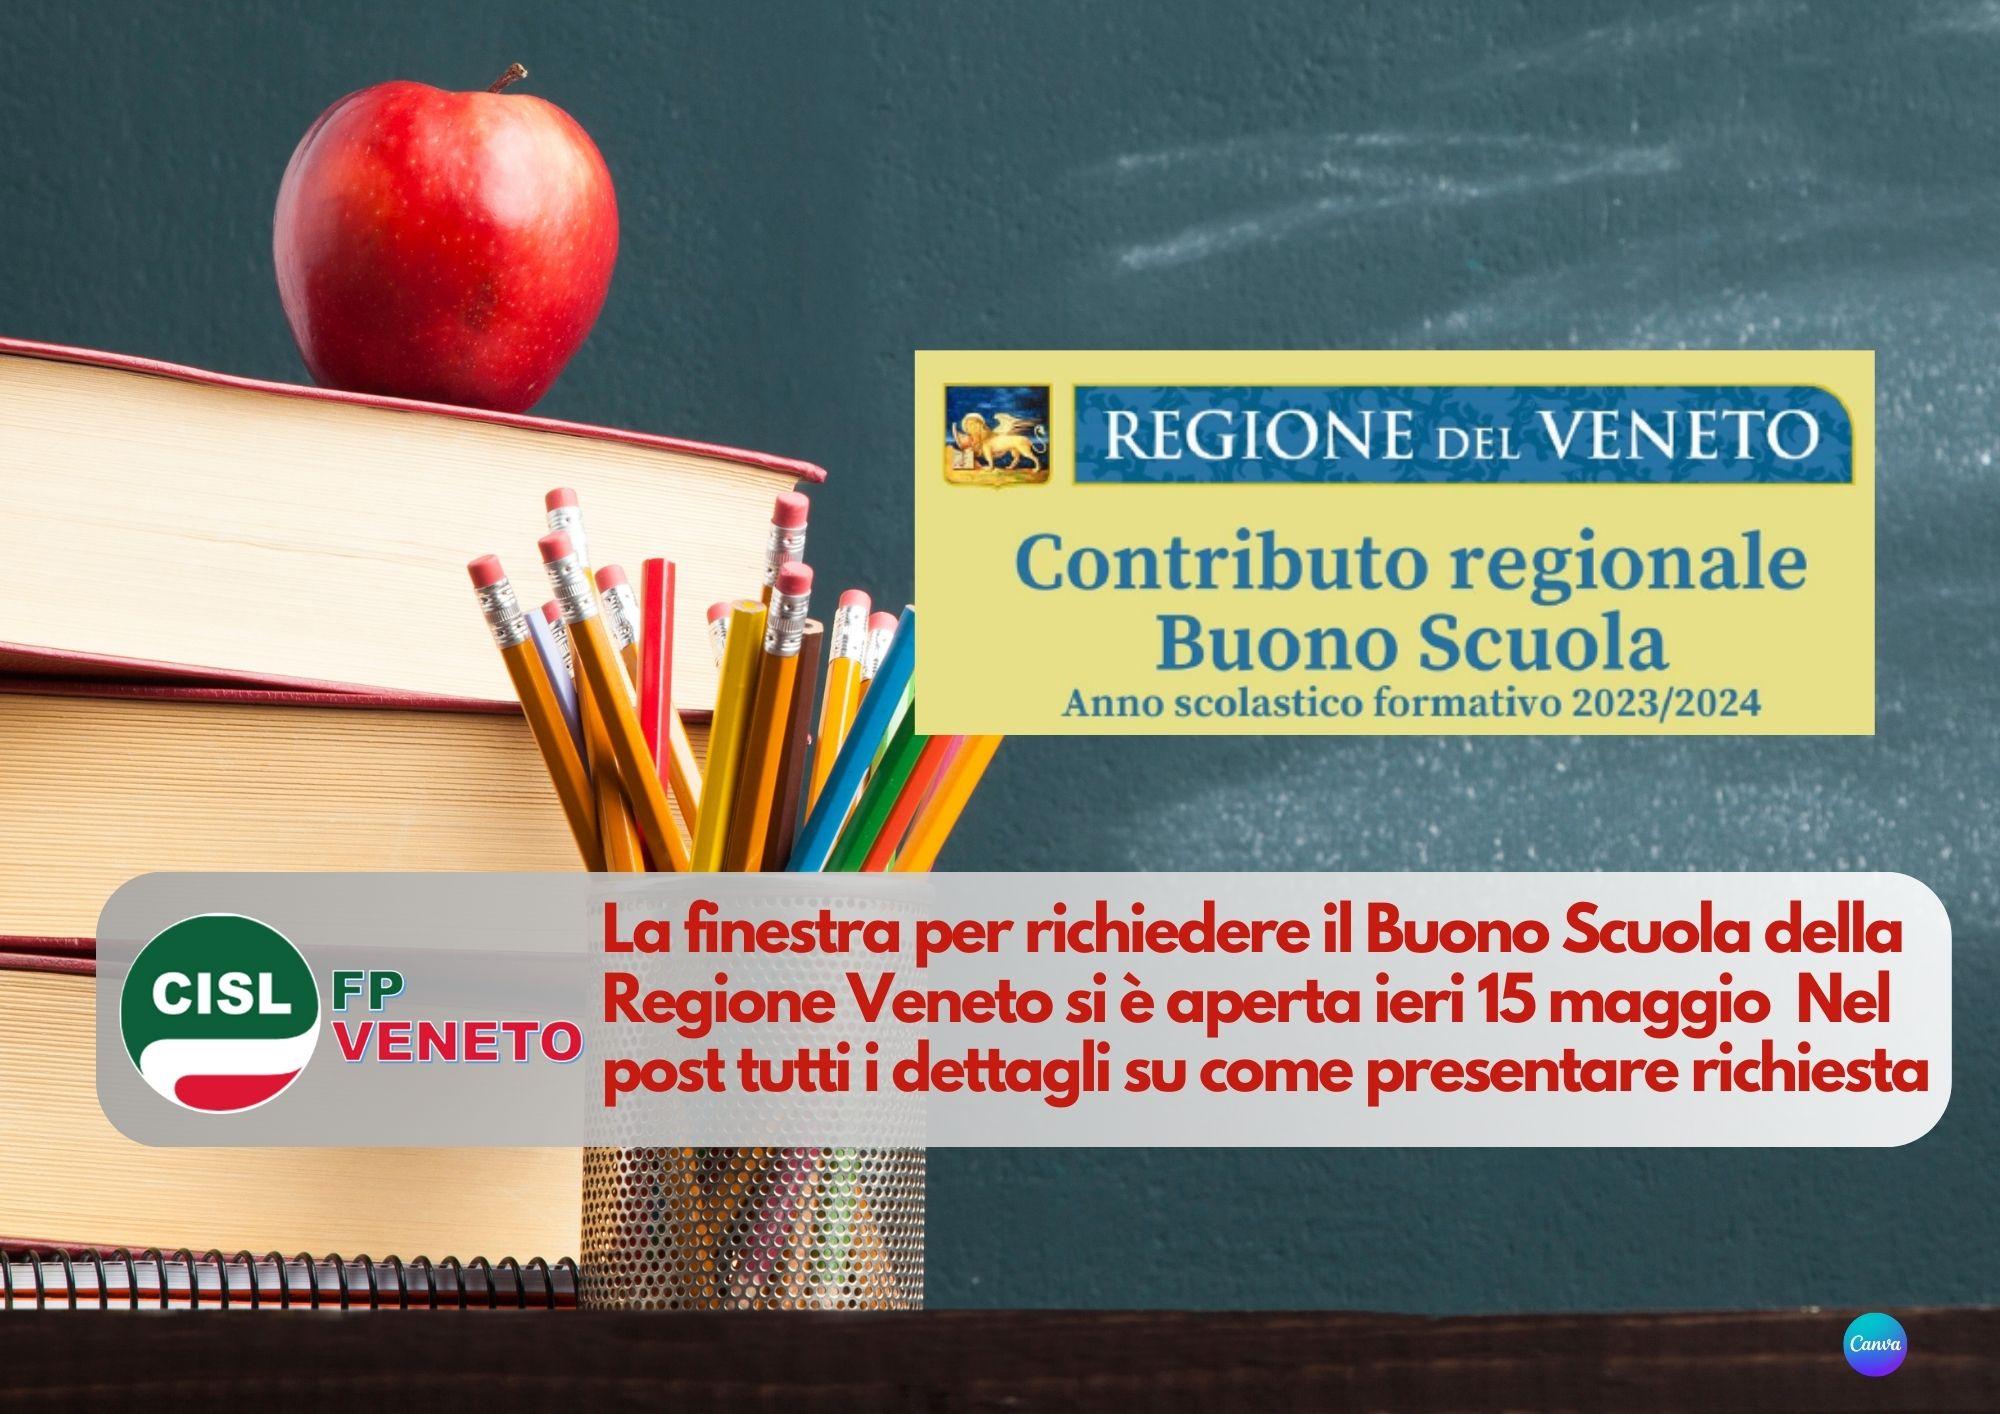 CISL FP Veneto. Contributo regionale Veneto "Buono Scuola". Come e quando richiederlo